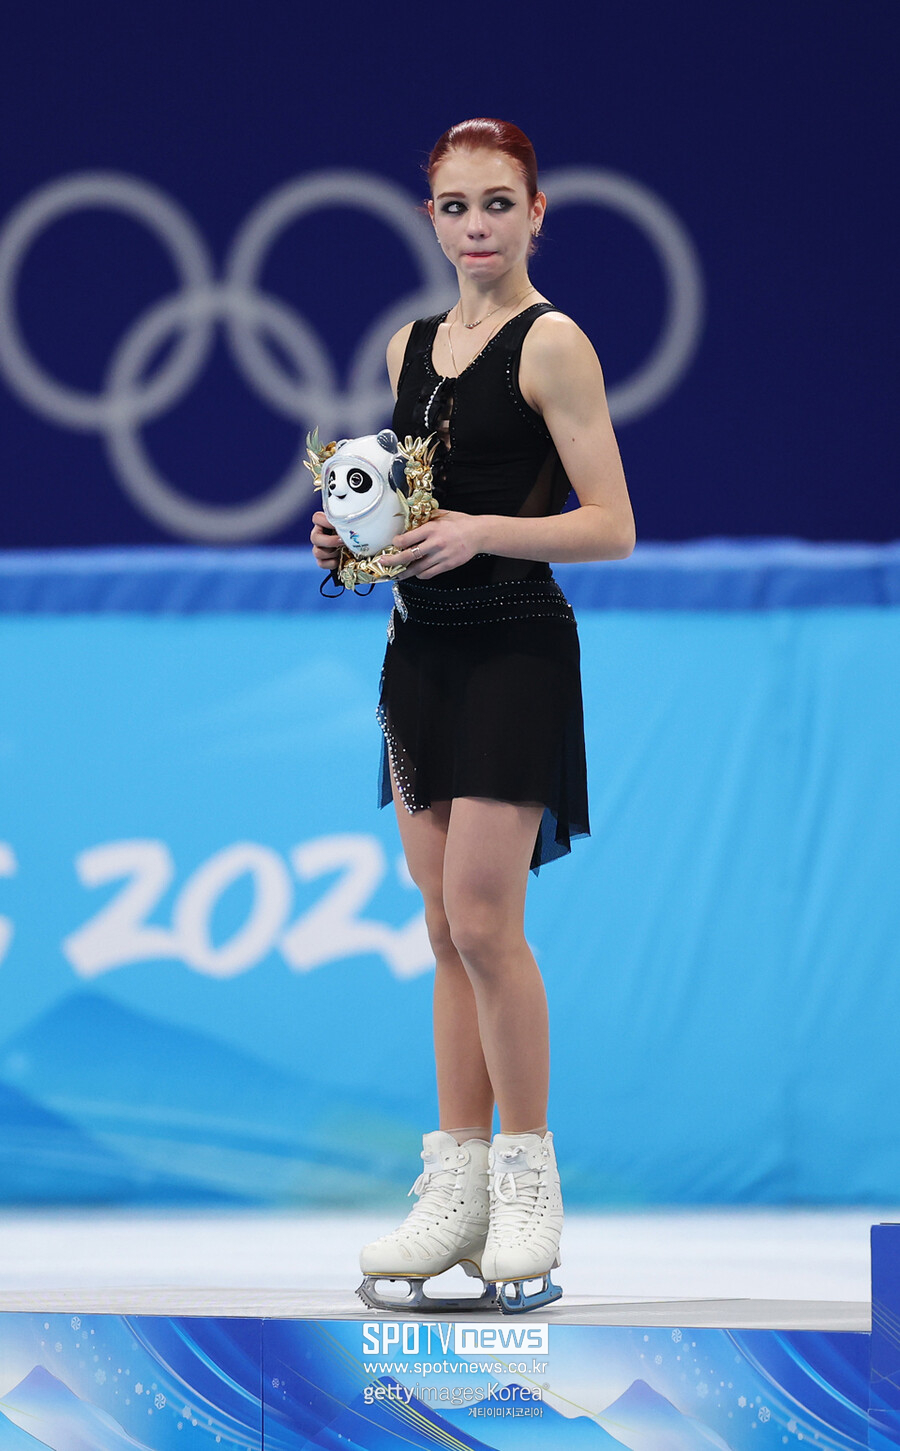 ▲ 2022베이징동계올림픽 피겨 스케이팅 여자 싱글에서 은메달을 획득한 알렉산드라 트루소바